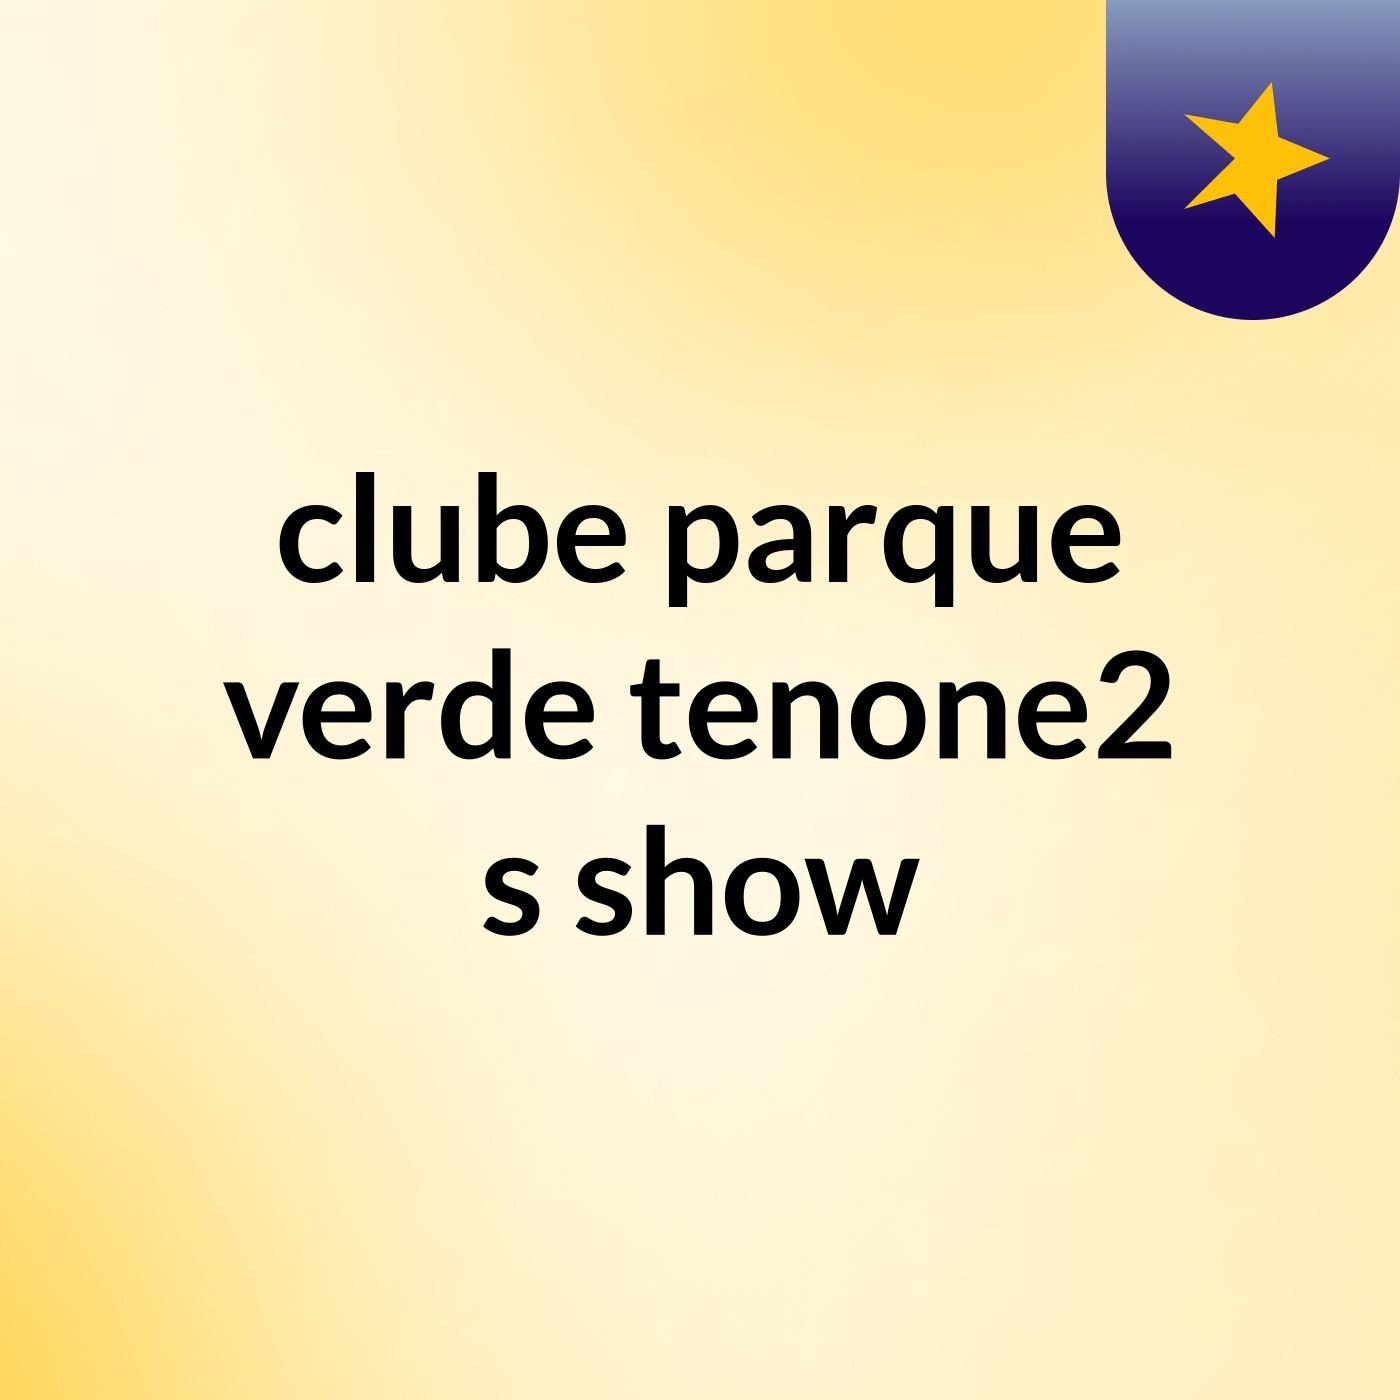 clube parque verde tenone2's show